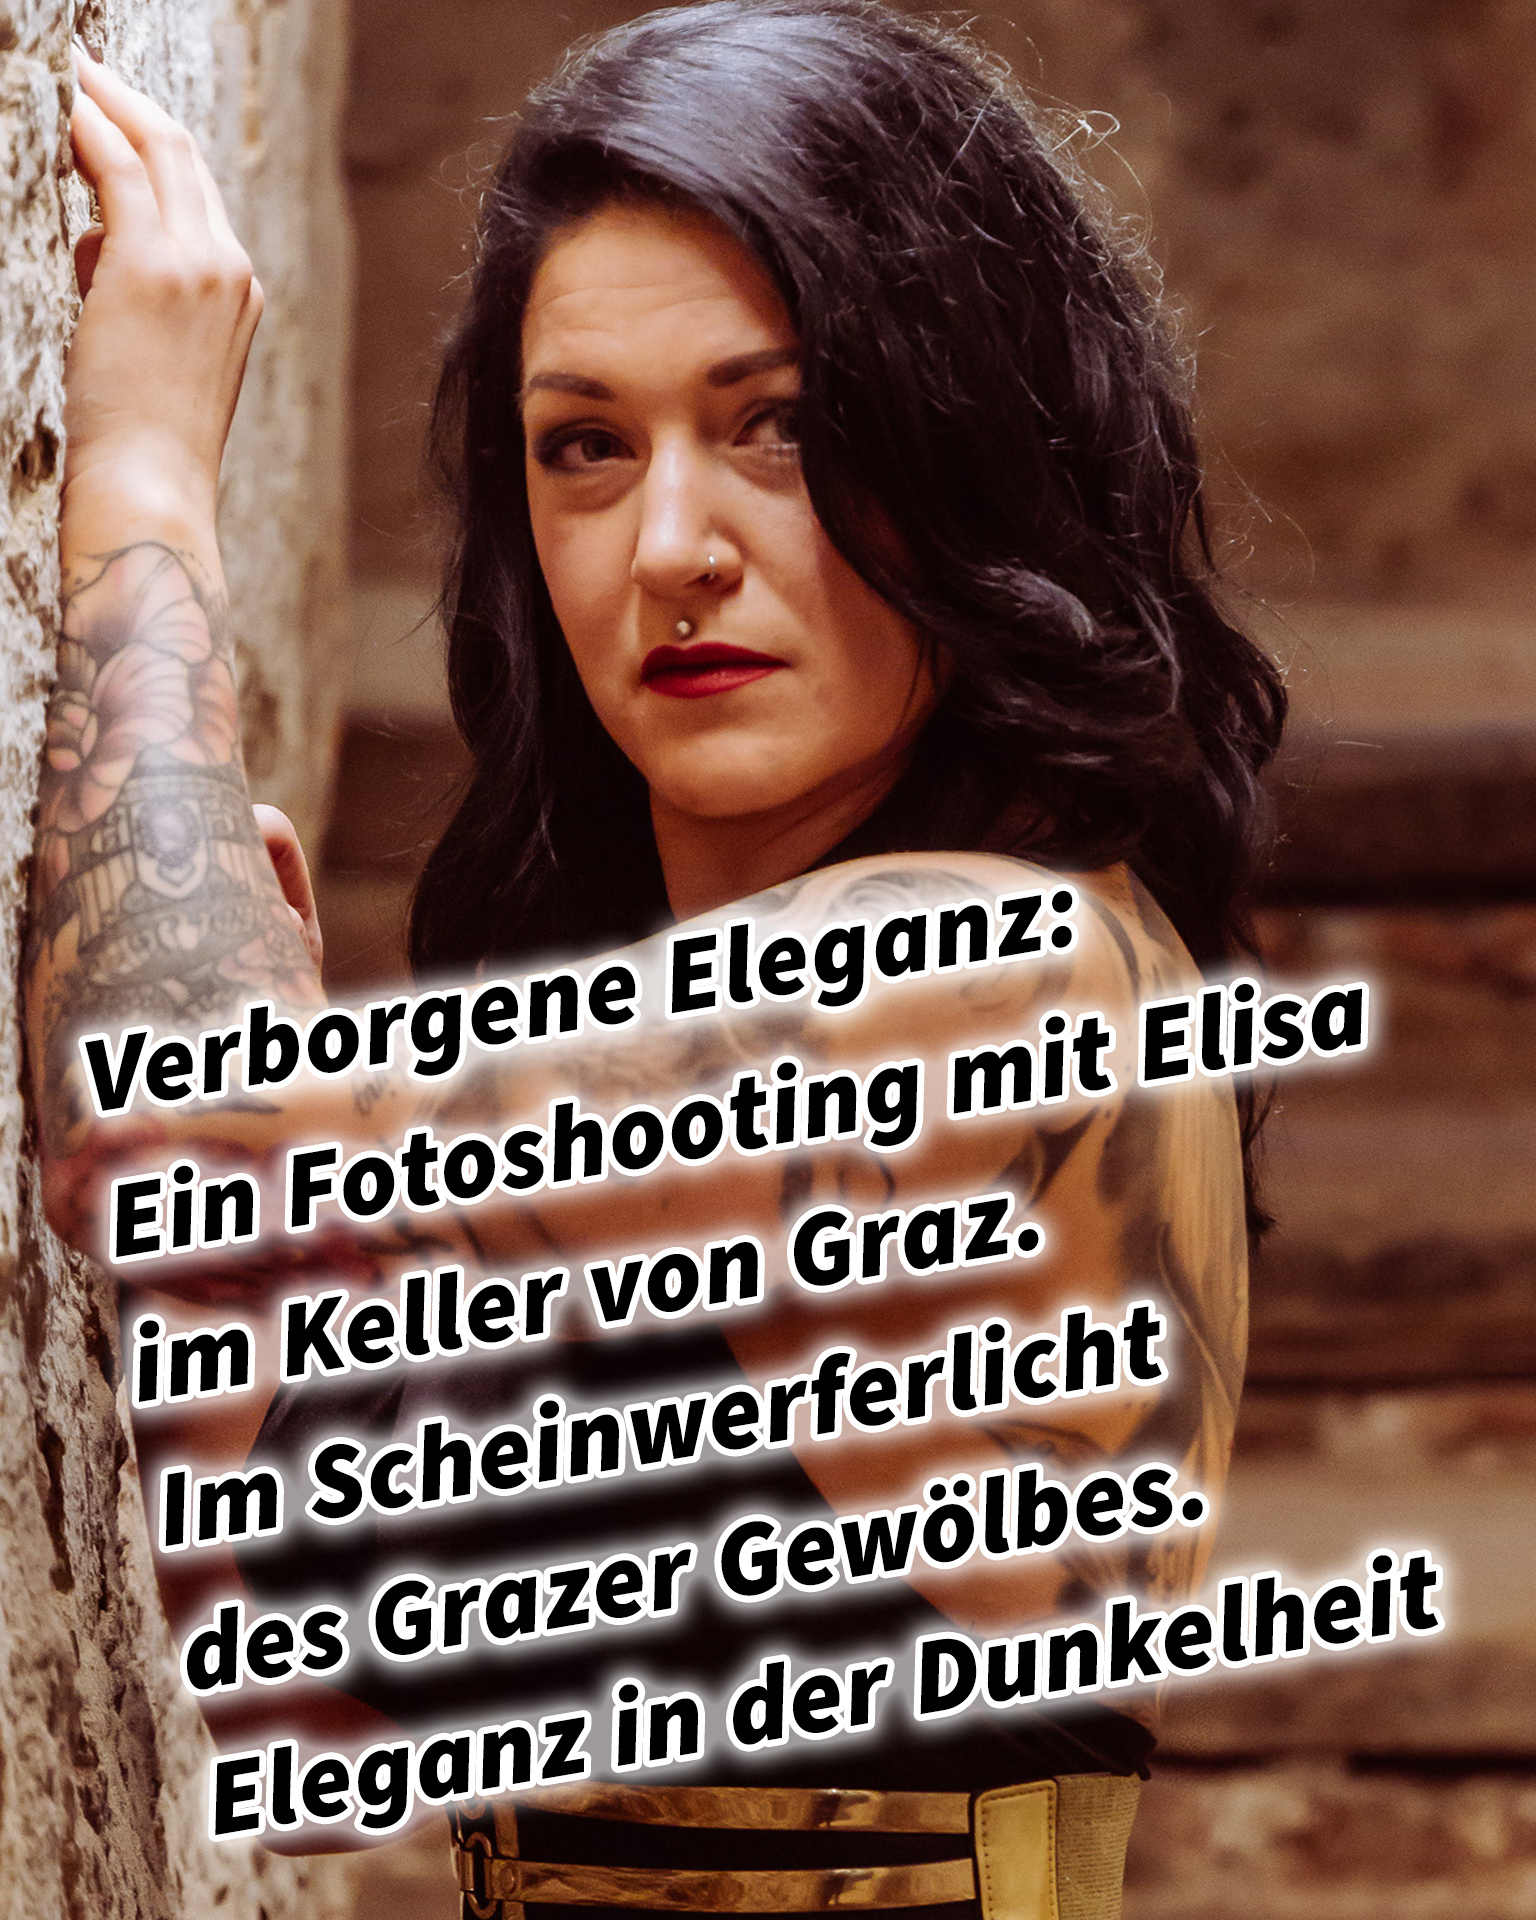 Verborgene Eleganz: Ein Fotoshooting mit Elisa im historischen Keller von Graz. Elisa im Scheinwerferlicht des Grazer Gewölbes. Eleganz in der Dunkelheit: Modefotografie mit Elisa in Graz